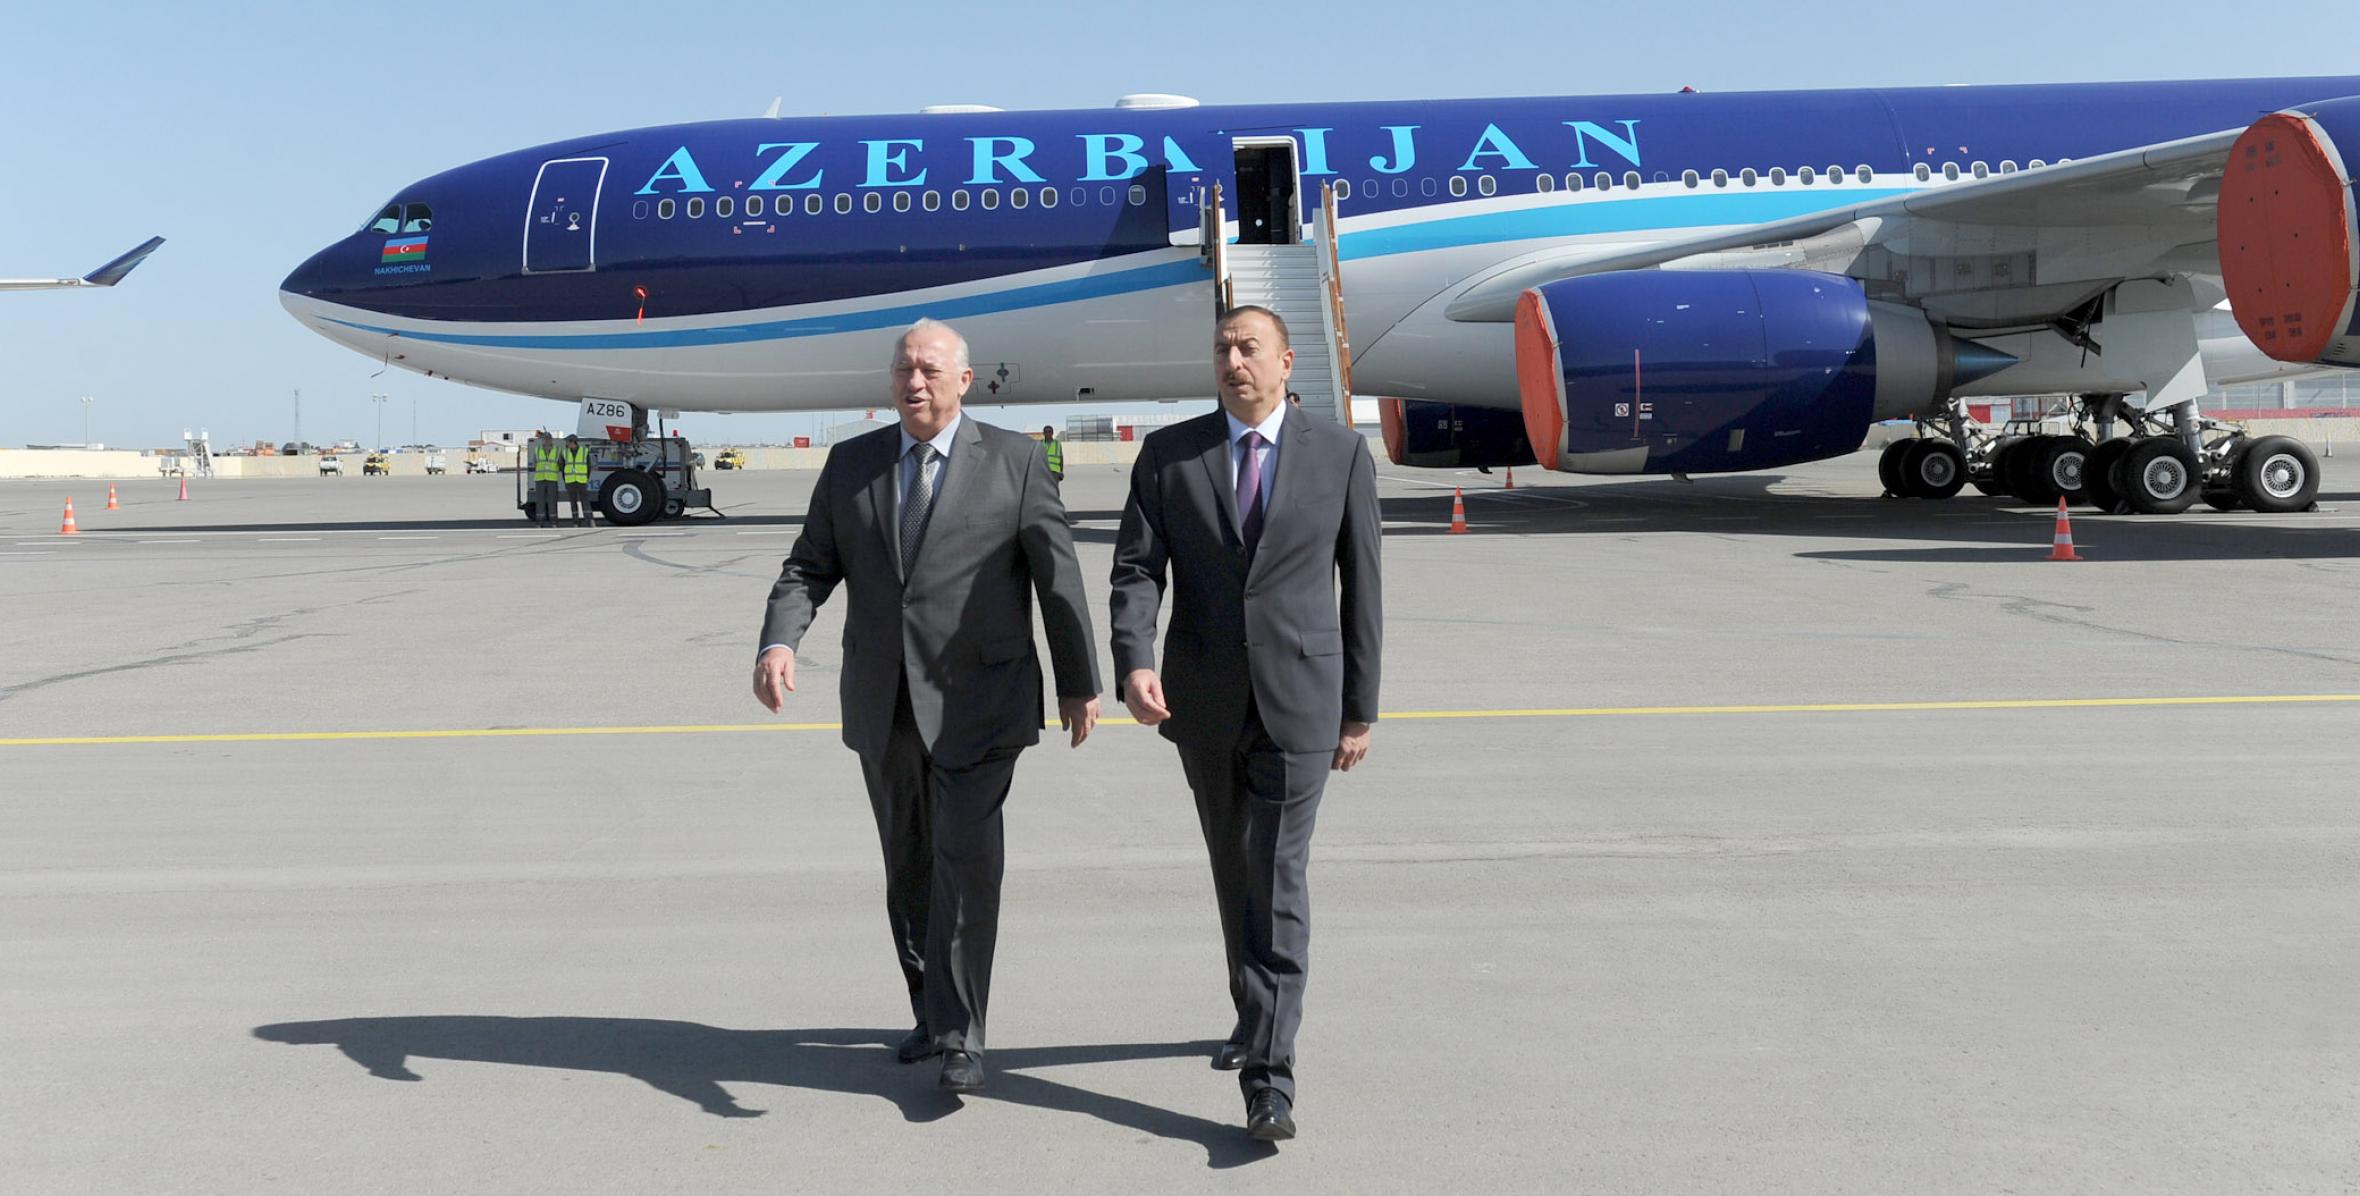 Ильхам Алиев ознакомился с ходом строительства современного ангарного и аэровокзального комплексов в Международном аэропорту Гейдар Алиев, принял участие в открытии Международного логистического центра и осмотрел новые пассажирские лайнеры